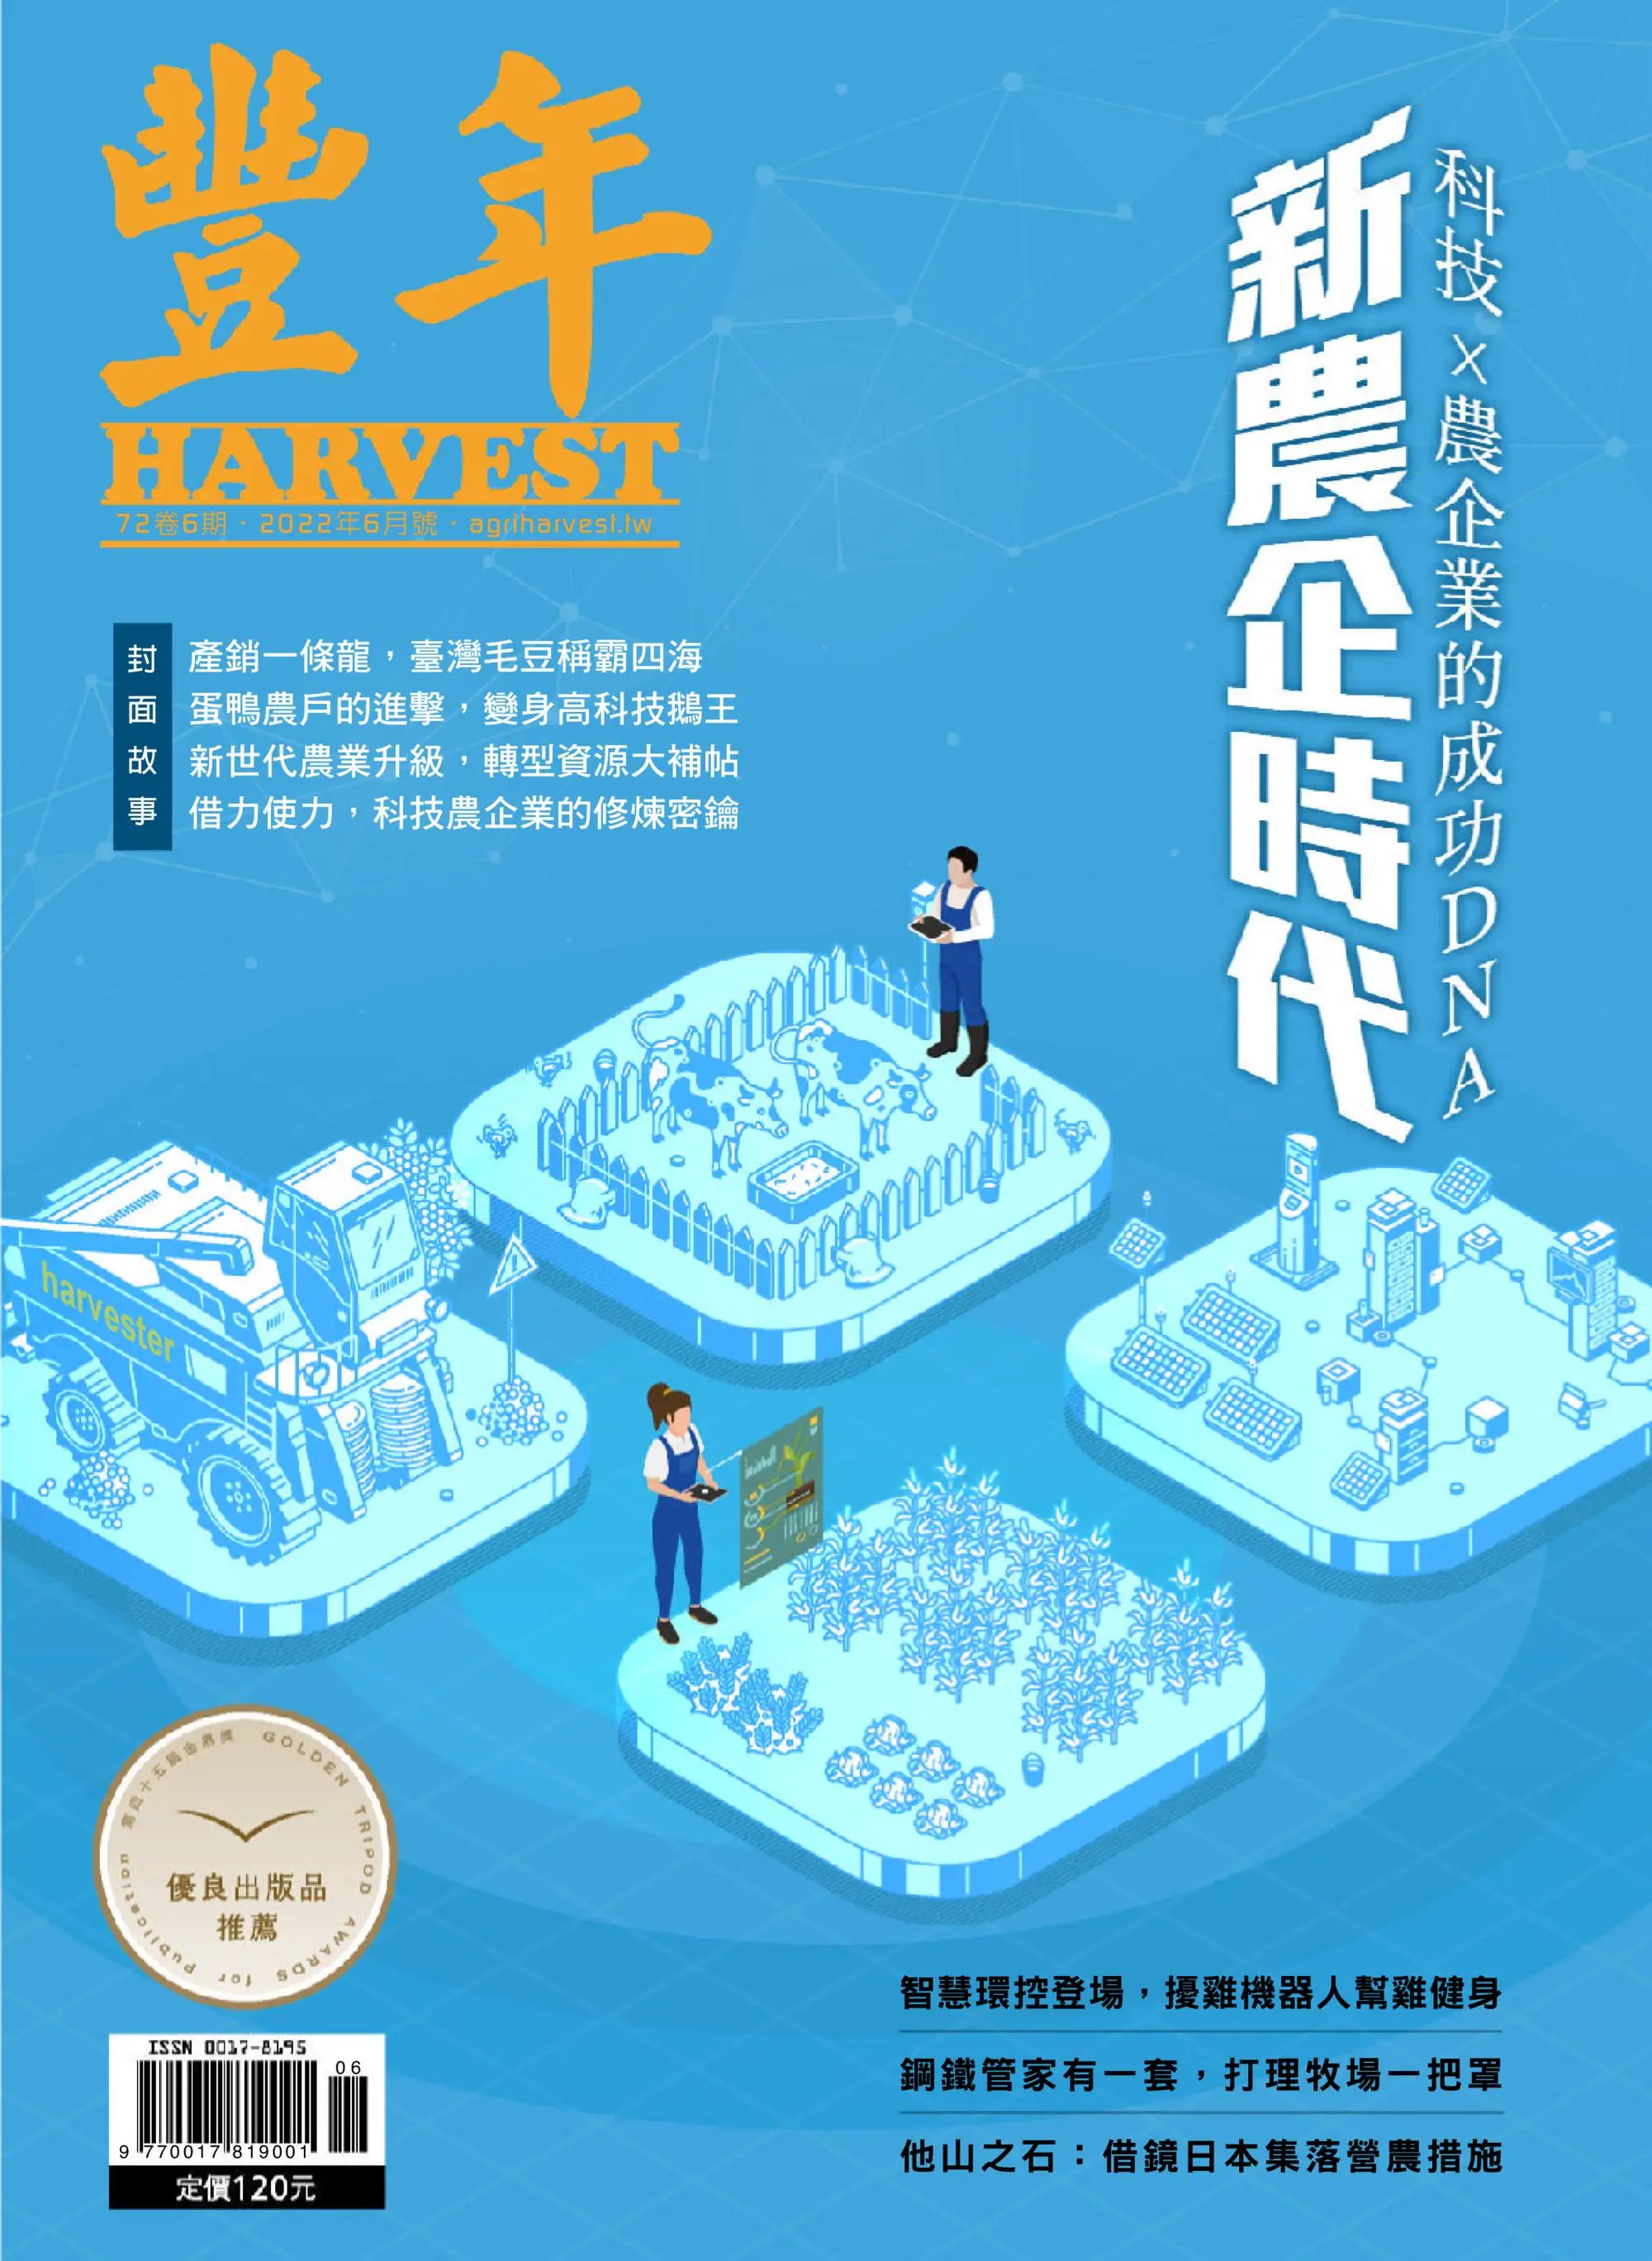 Harvest 豐年雜誌 – 六月 2022